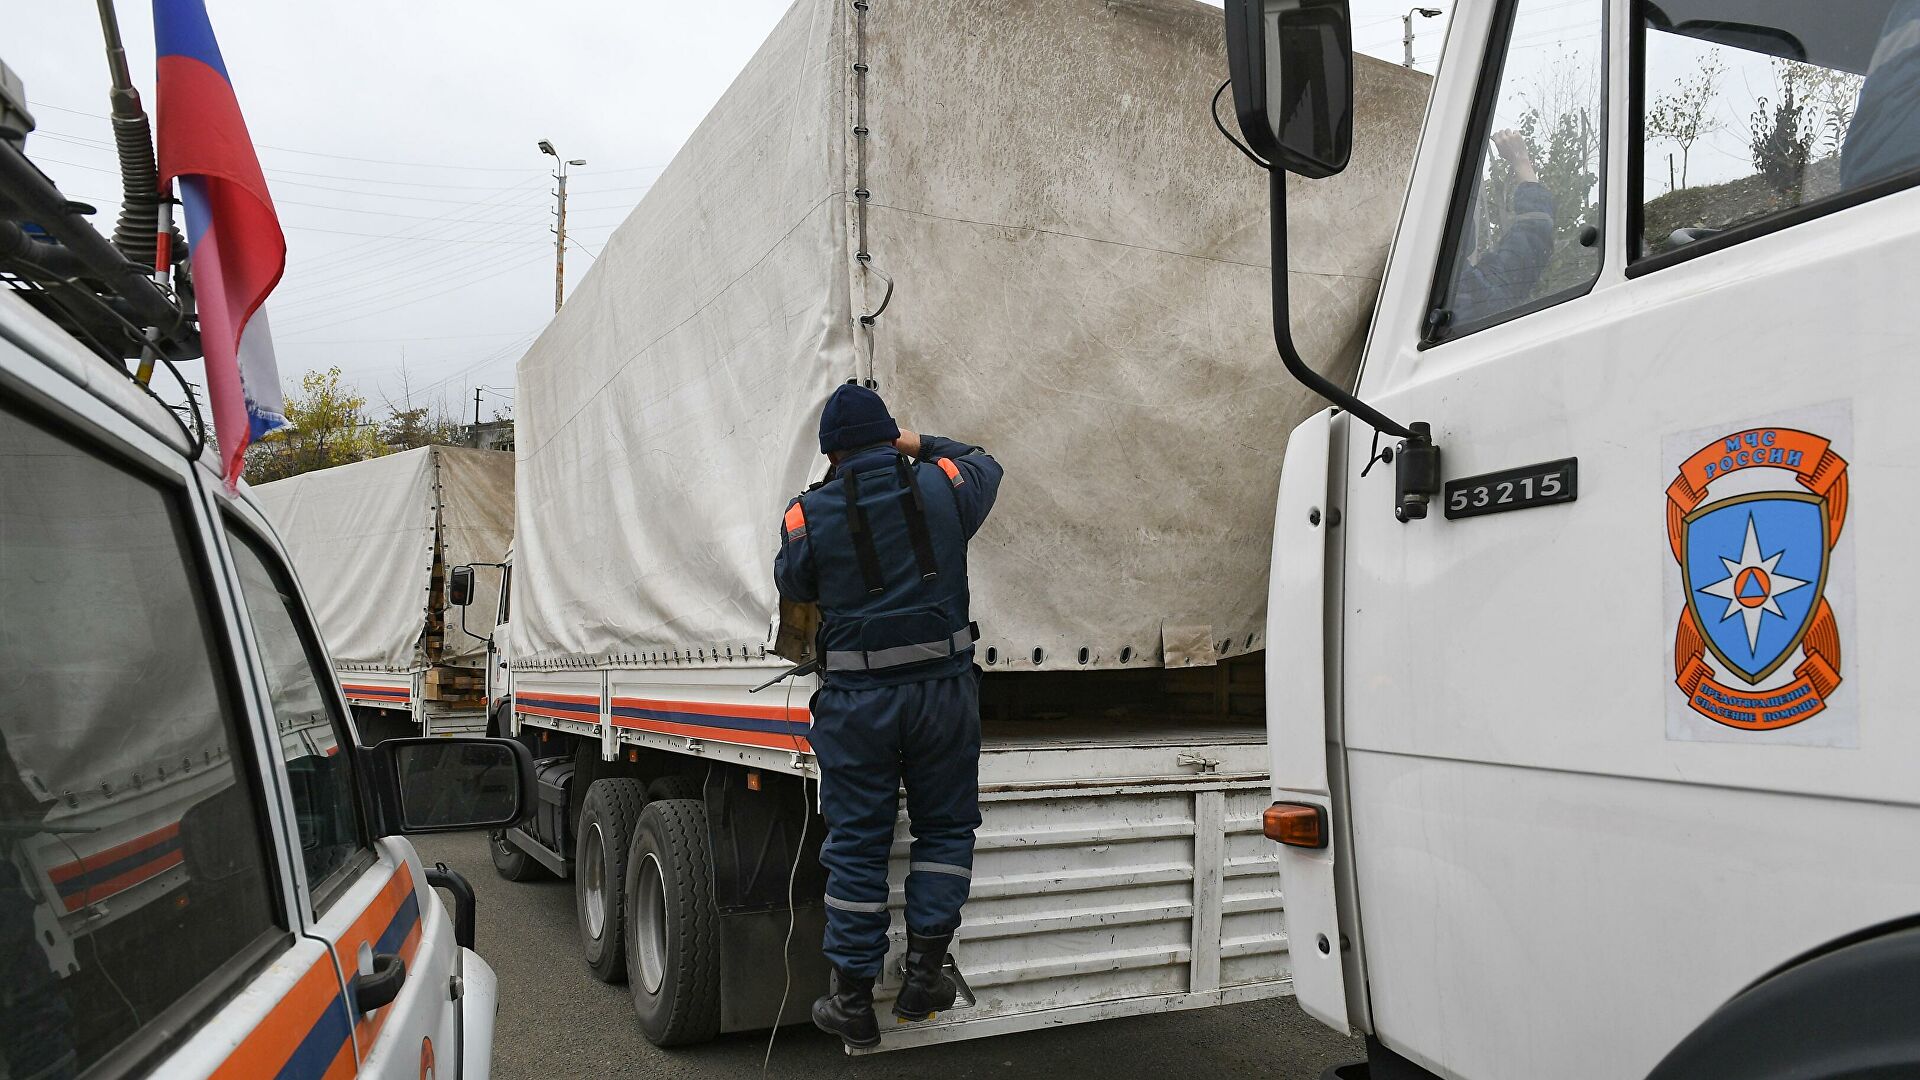 ՌԴ ԱԻՆ-ը քննարկում է երկաթուղային ճանապարհով ԼՂ-ին մարդասիրական օգնության առաքման հարցը